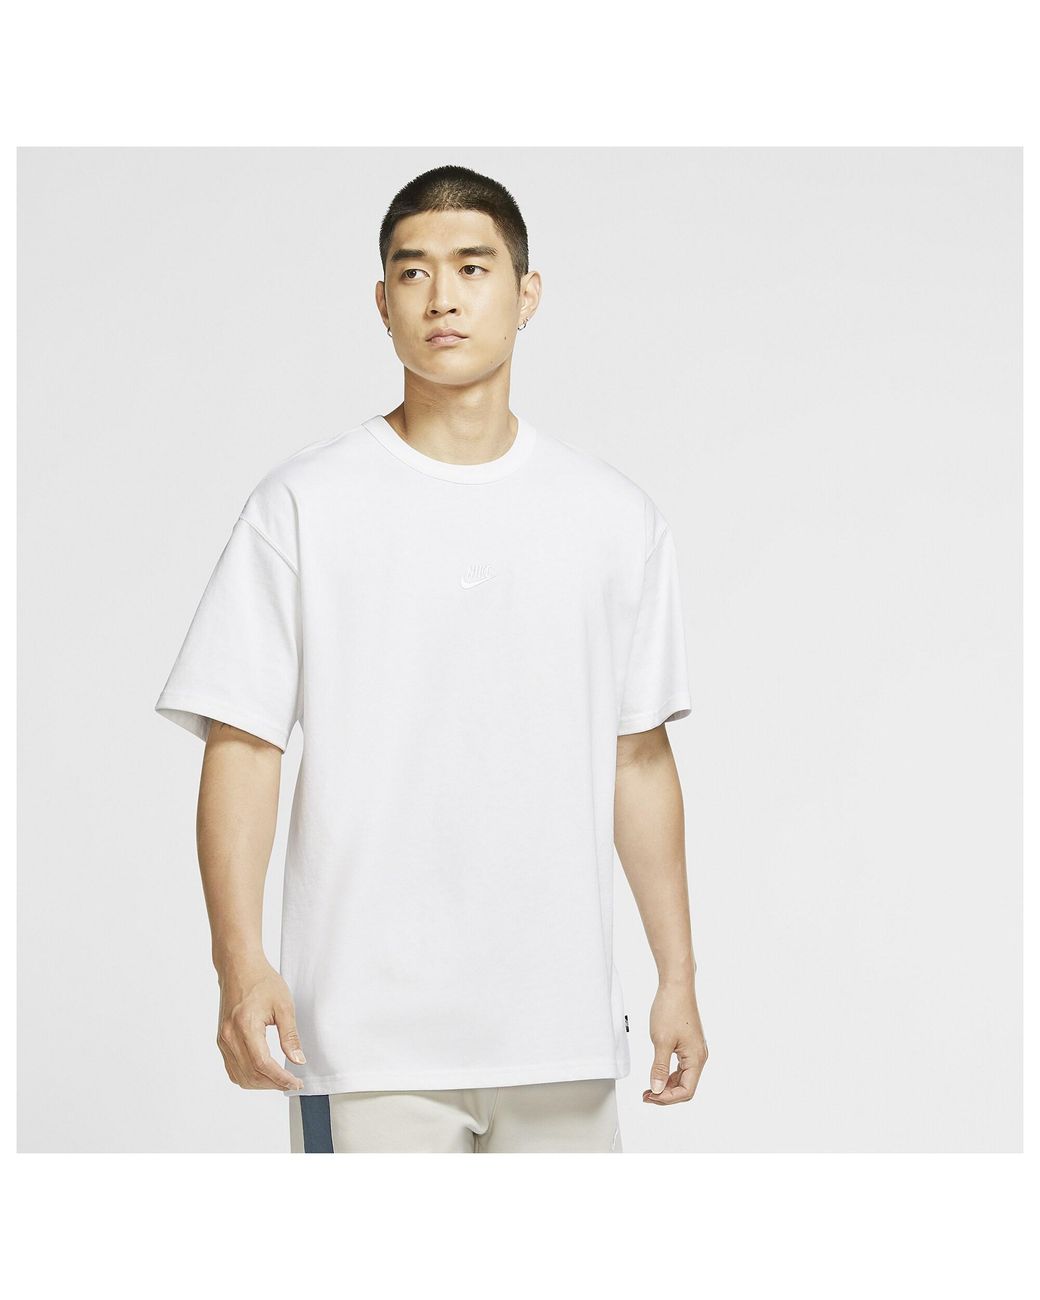 Nike Cotton Premium Essentials T-shirt in White/White (White) for Men ...